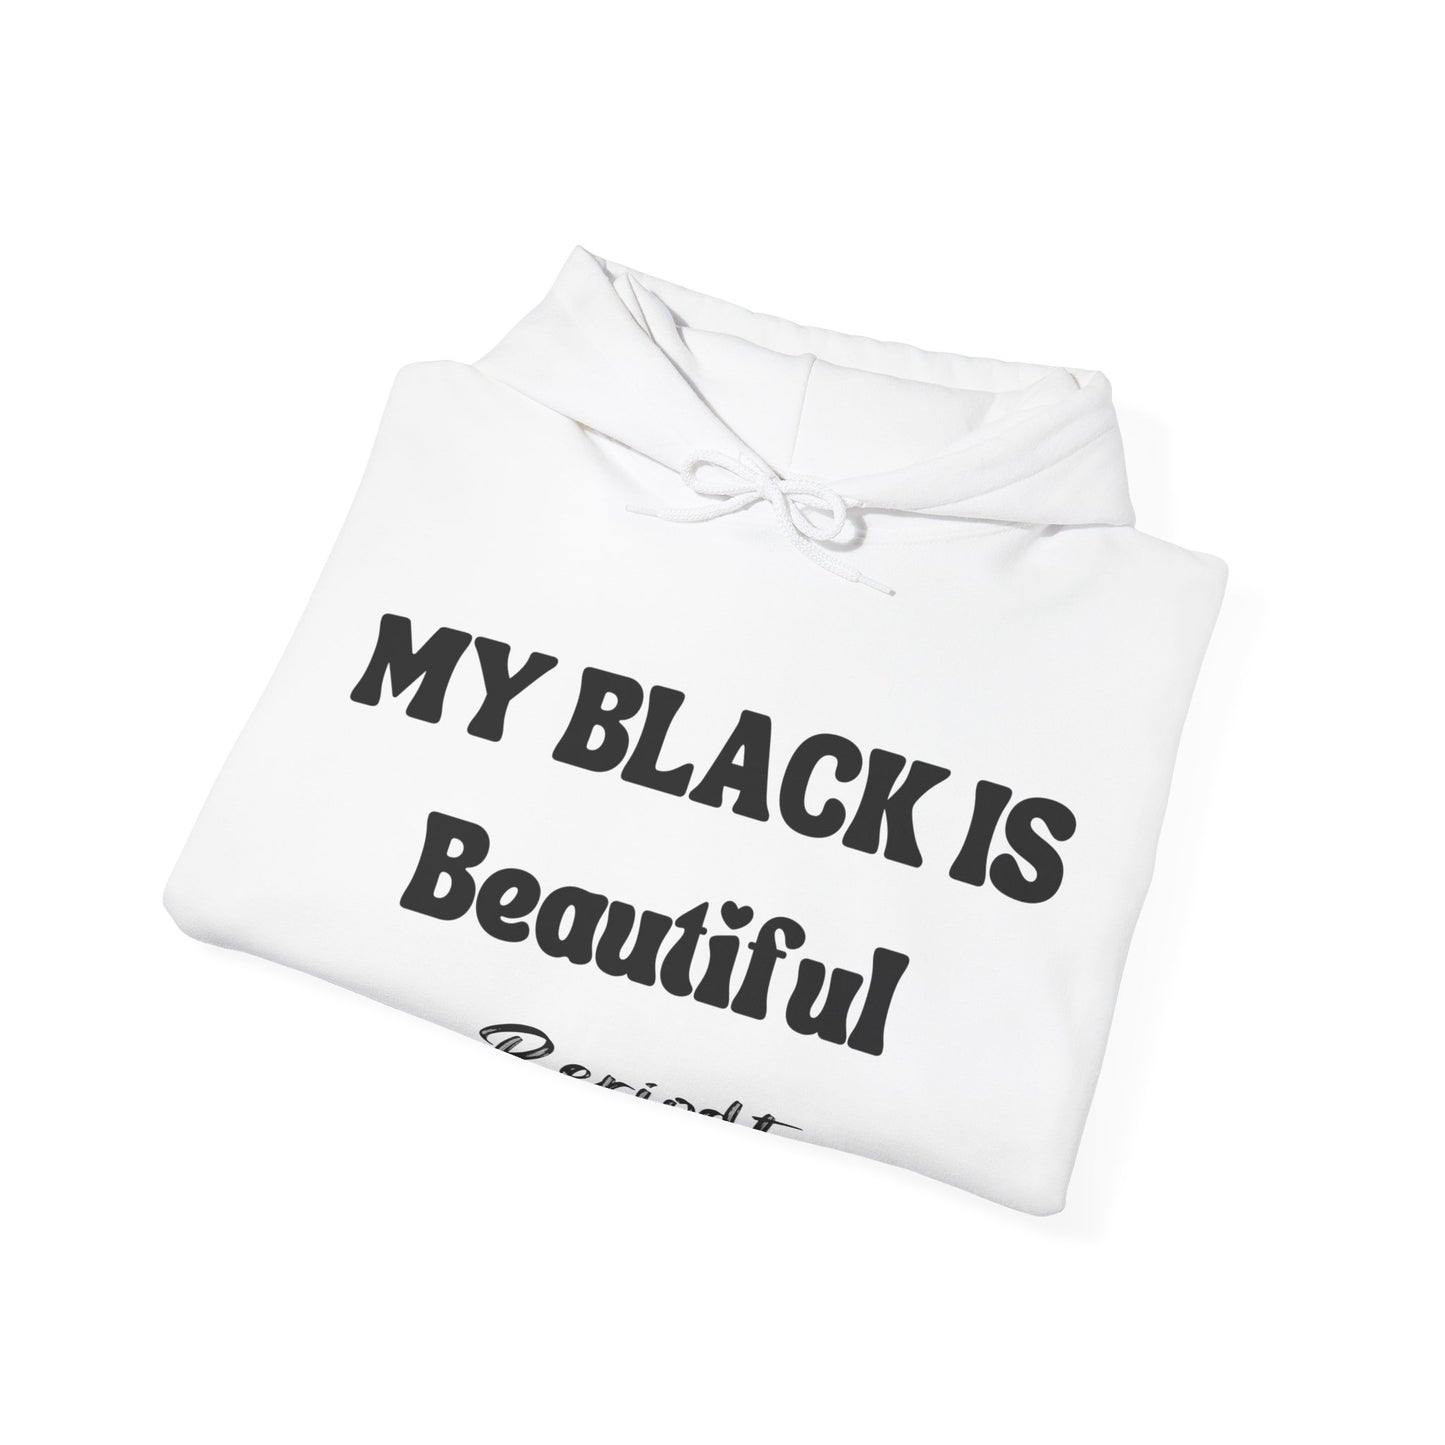 My Black Is Beautiful Periodt Hoodie